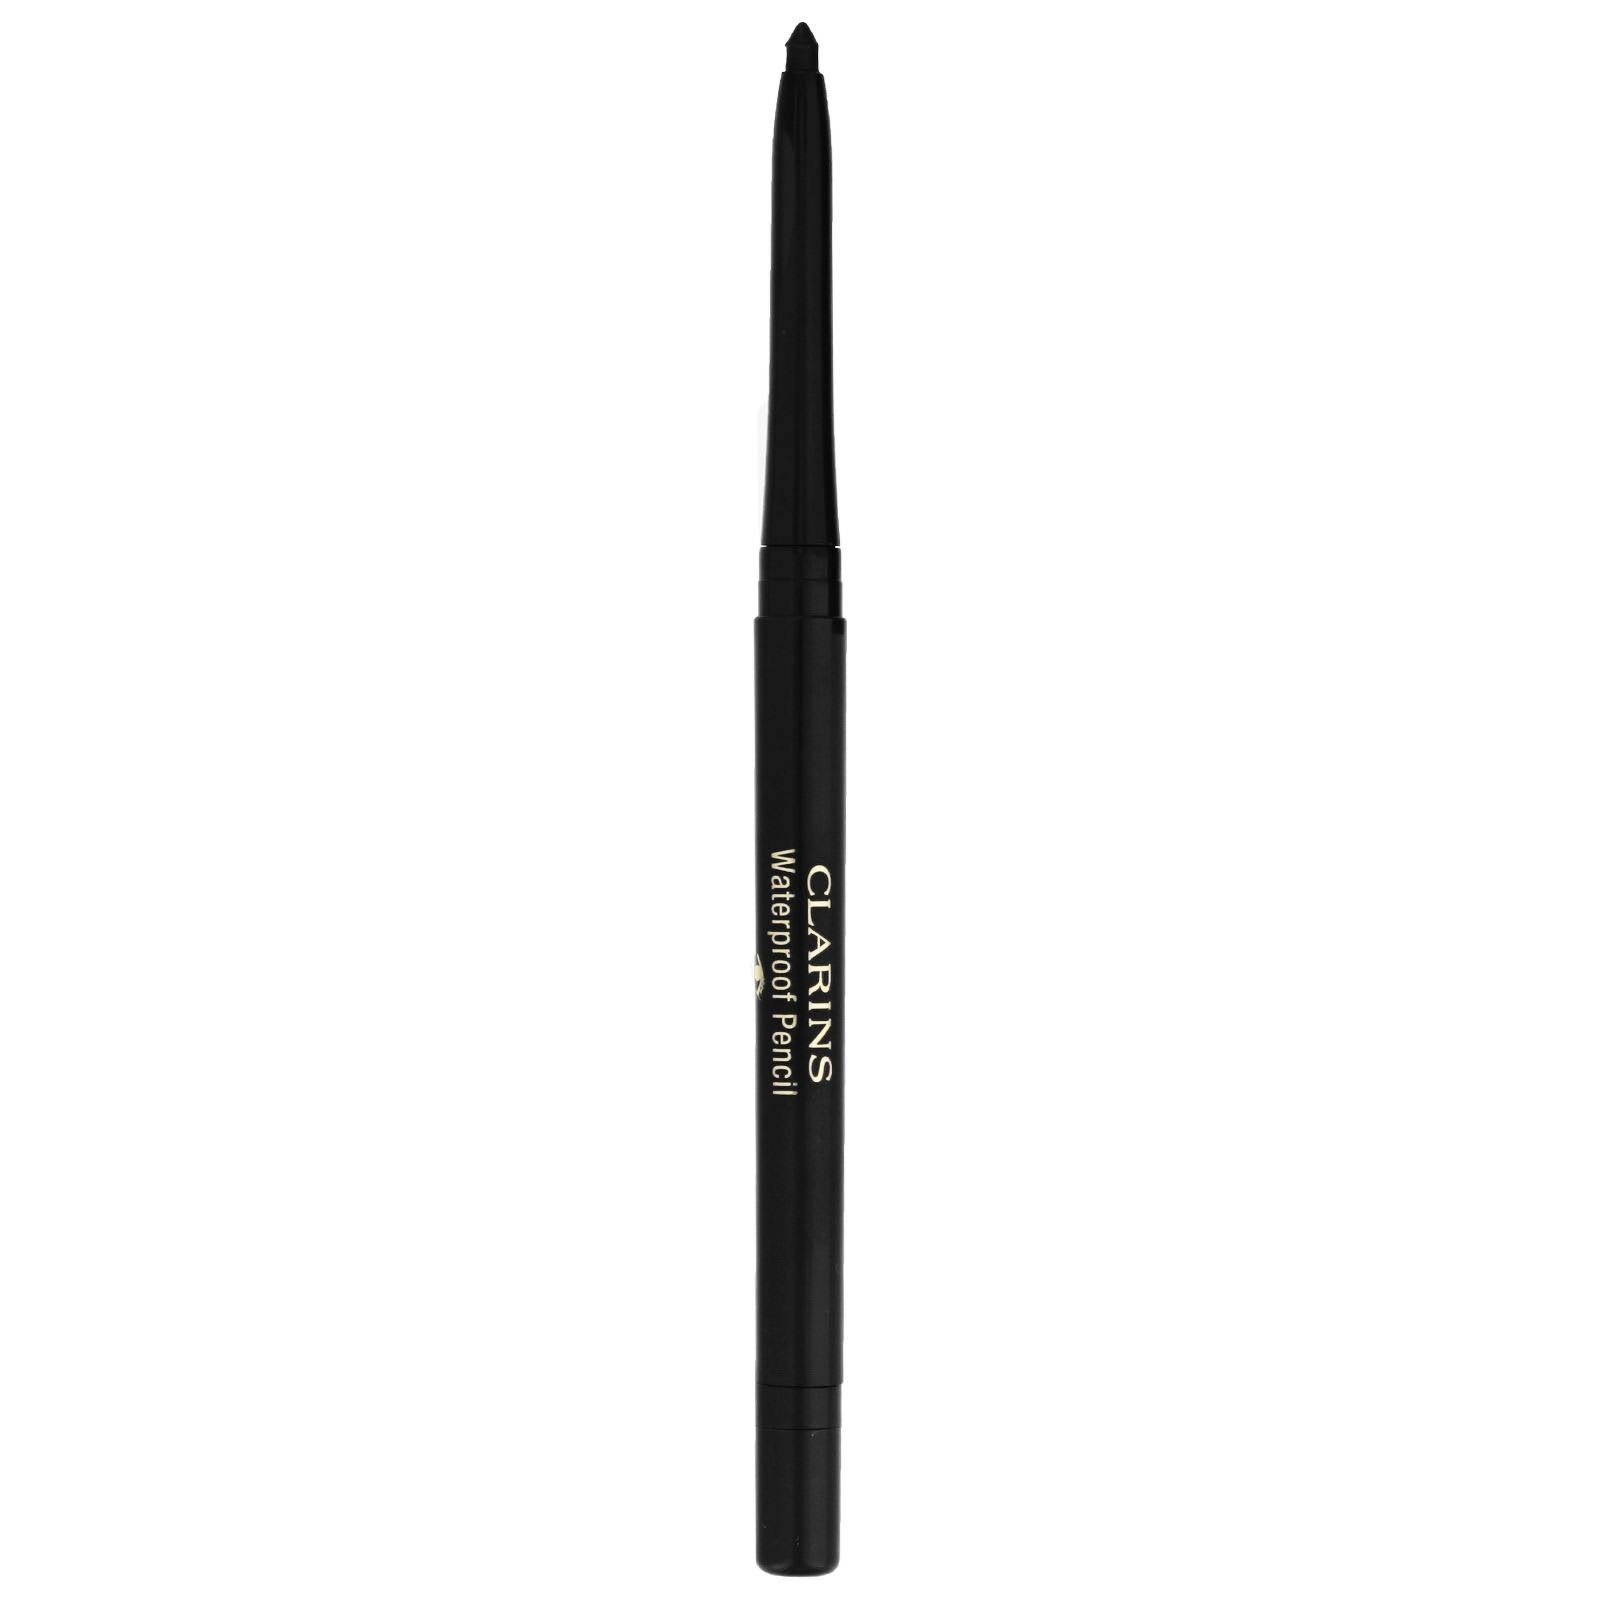 Clarins Waterproof Eye Pencil - 01 Black Tulip, 0.29g